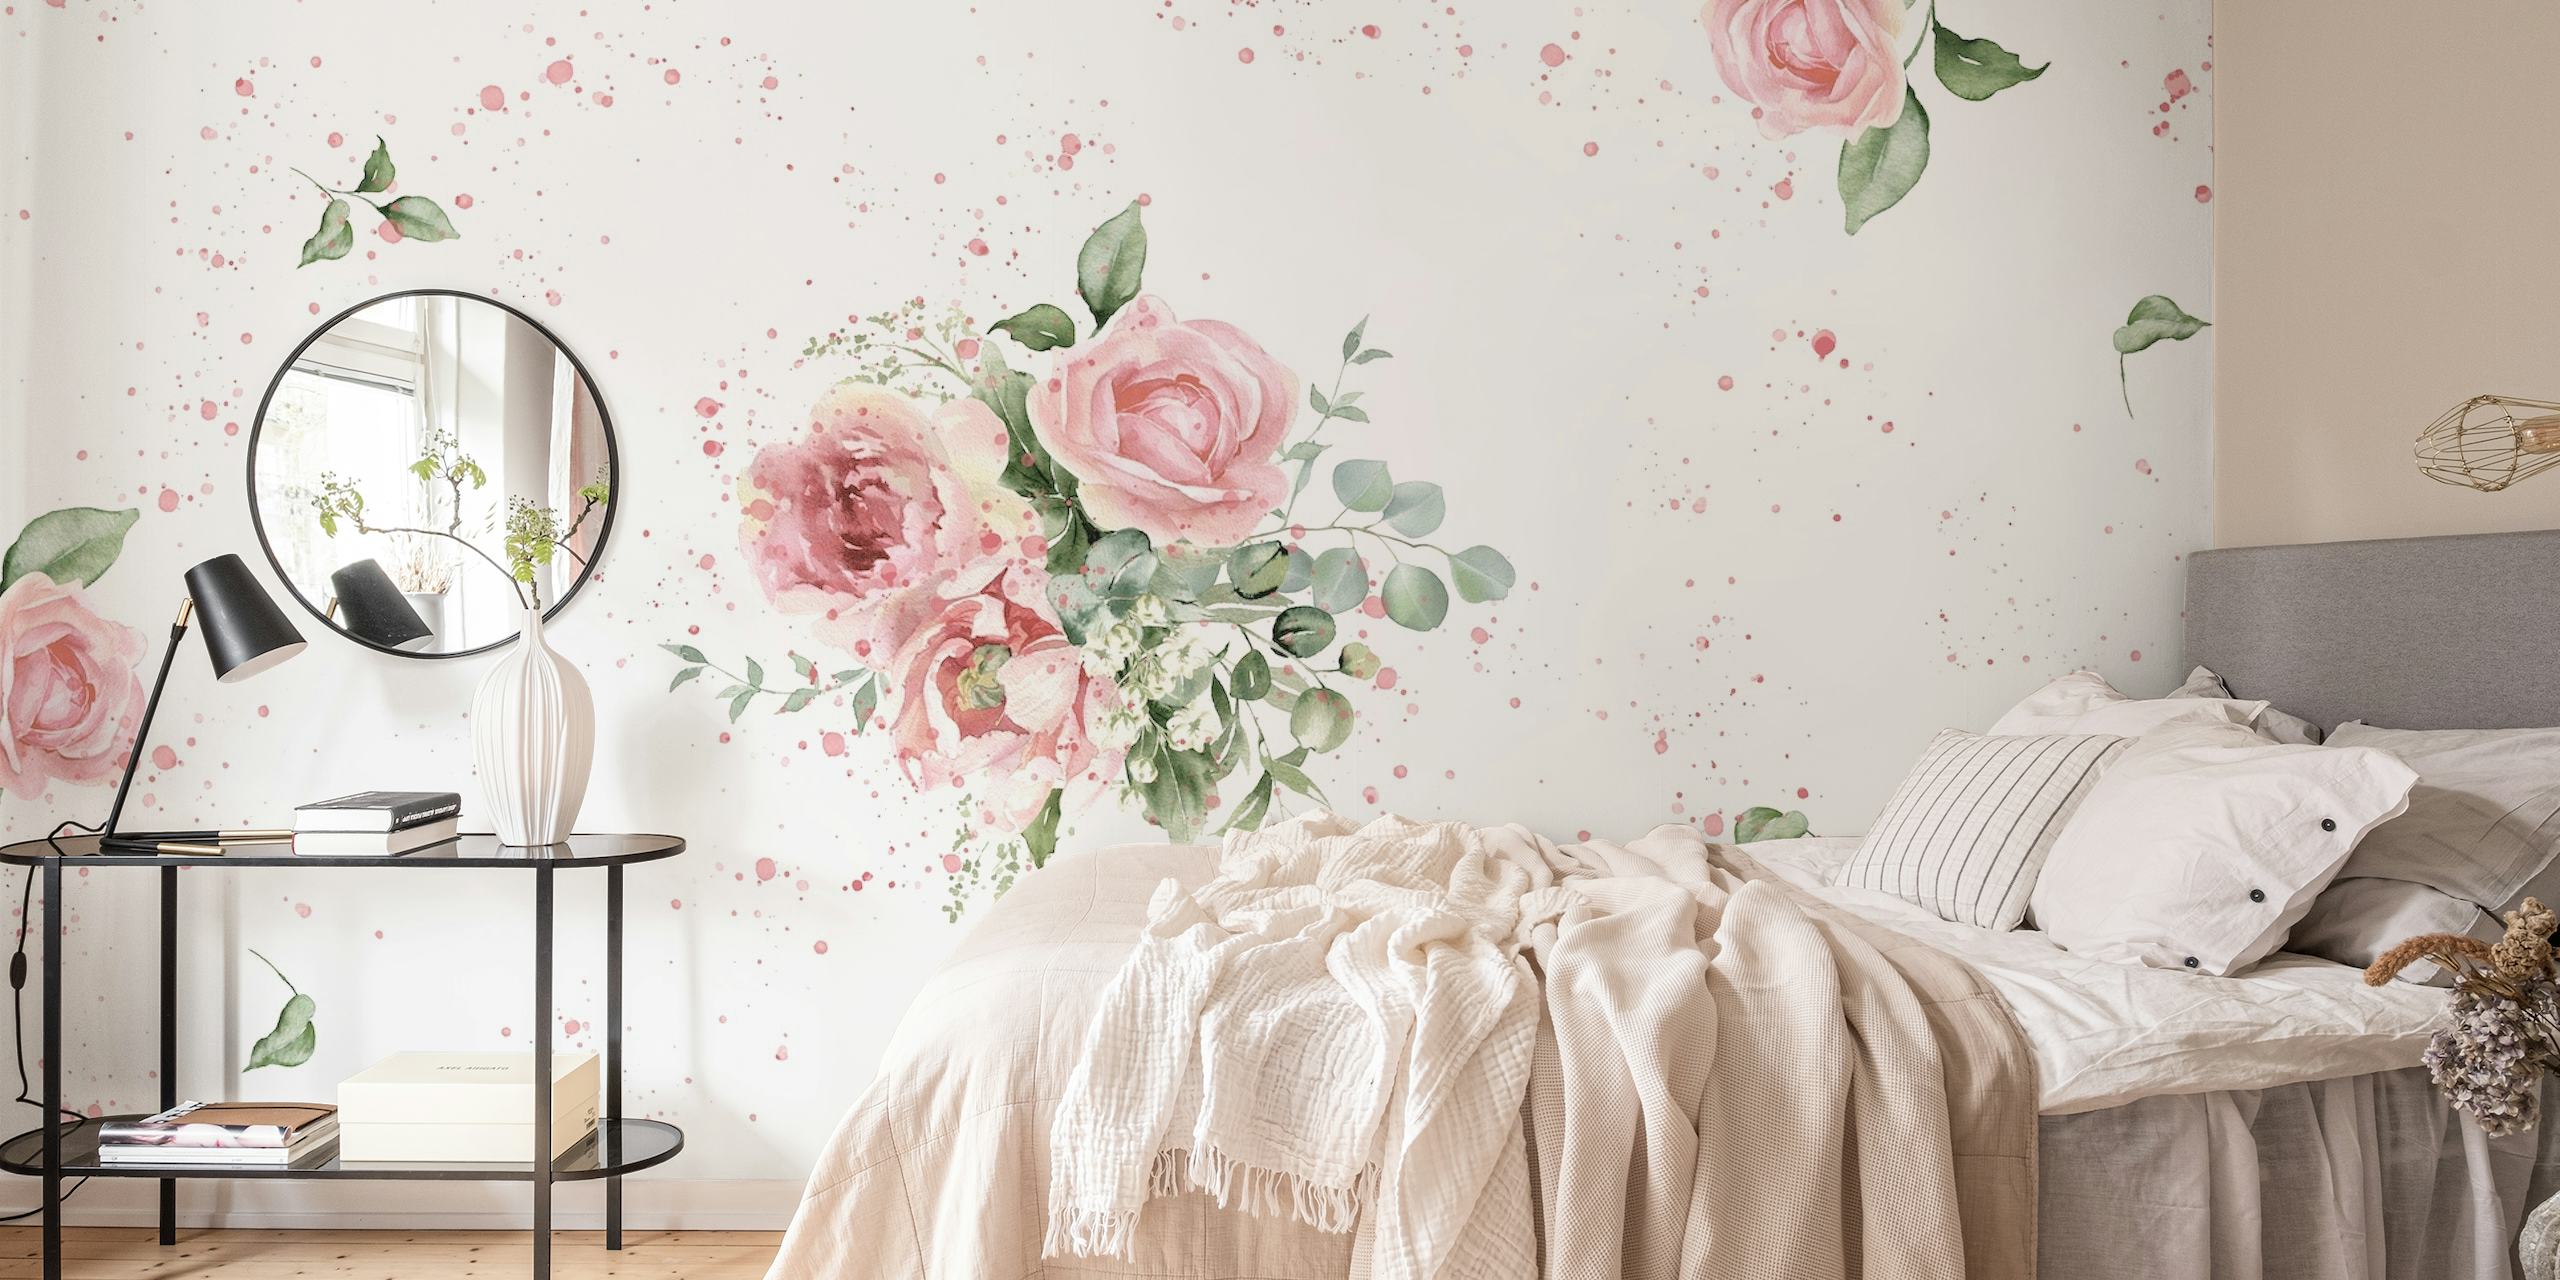 Elegant watercolor roses behang